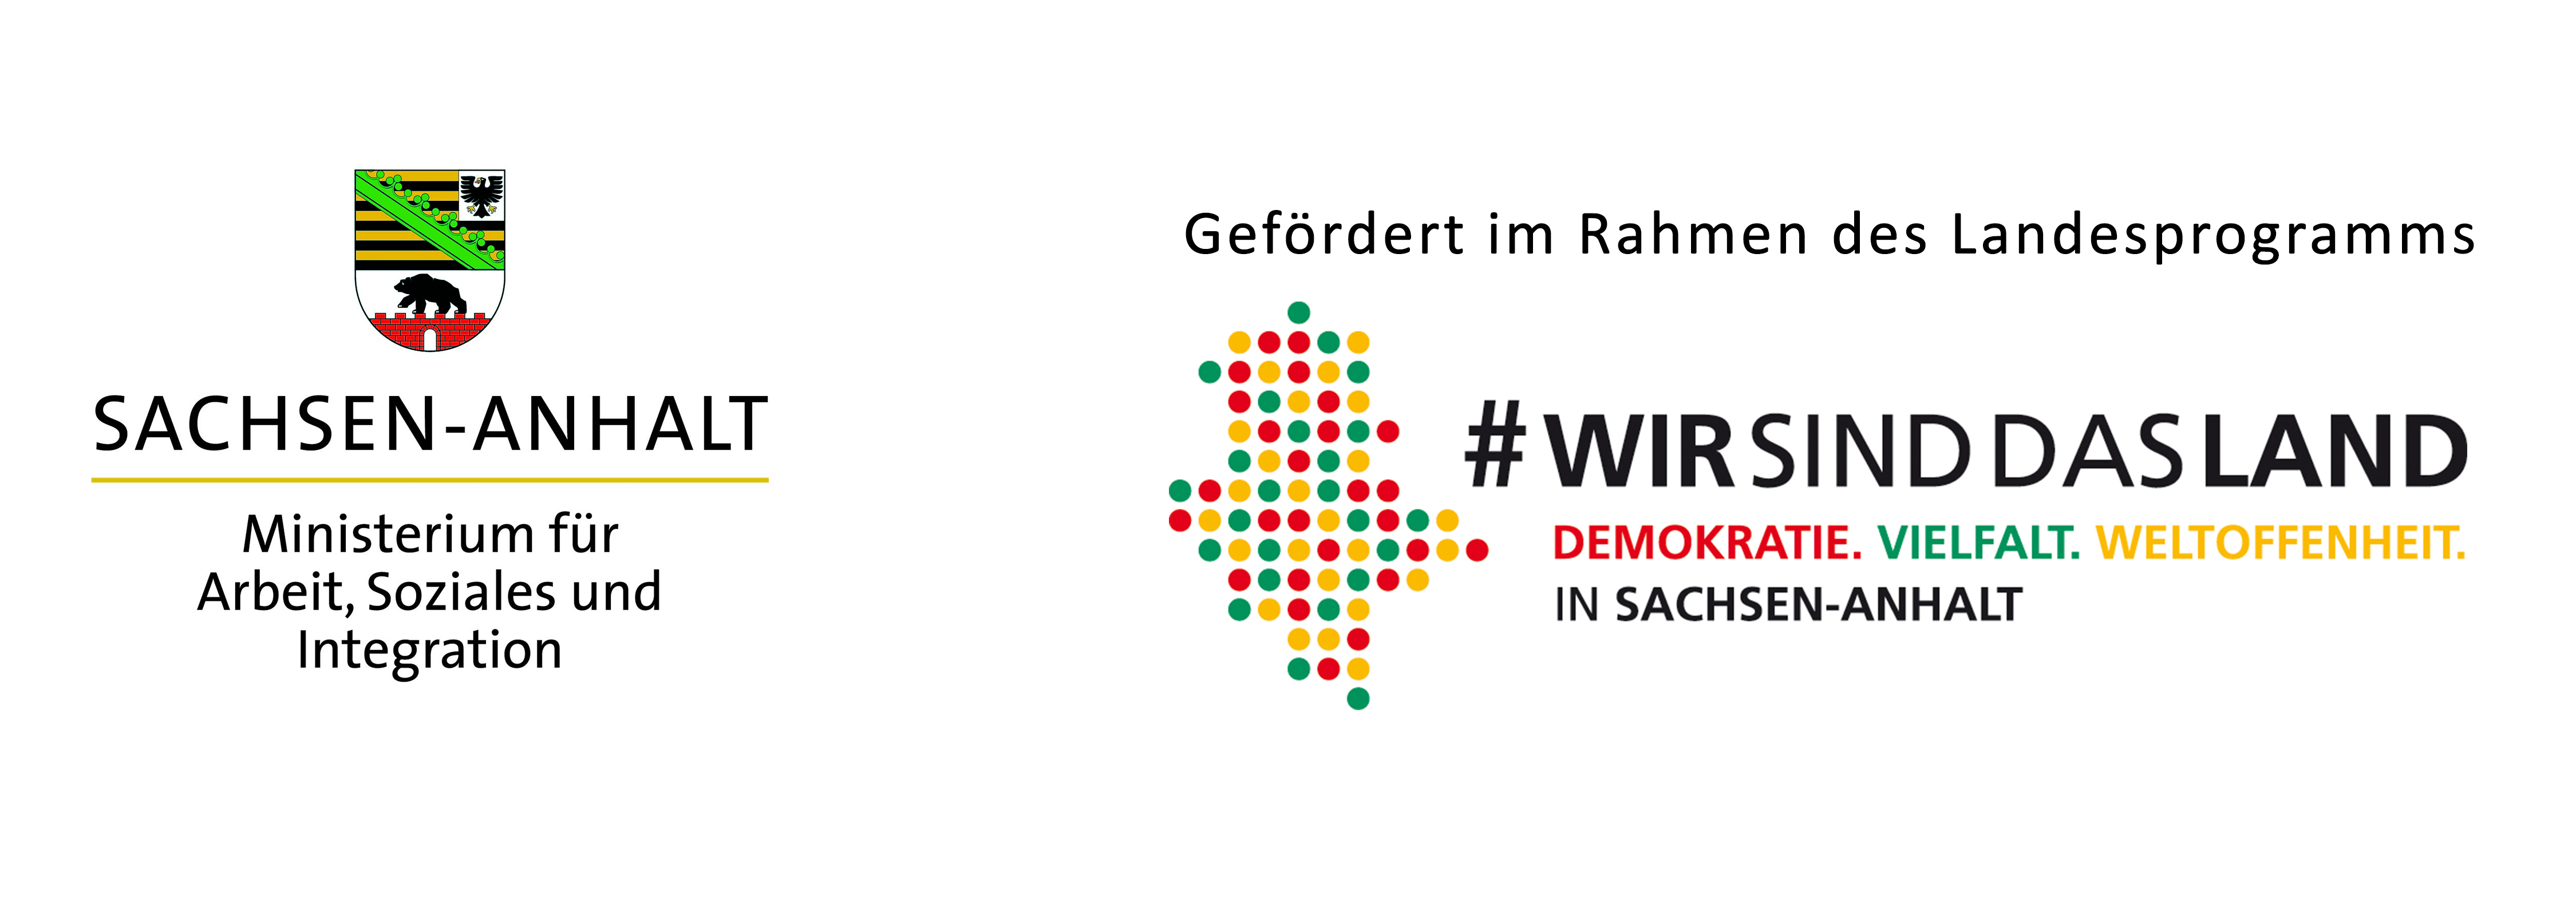 Logo Landesprogramm Demokratie, Vielfalt, Weltoffenheit des Ministerium für Arbeit, Soziales und Integration in Sachsen-Anhalt